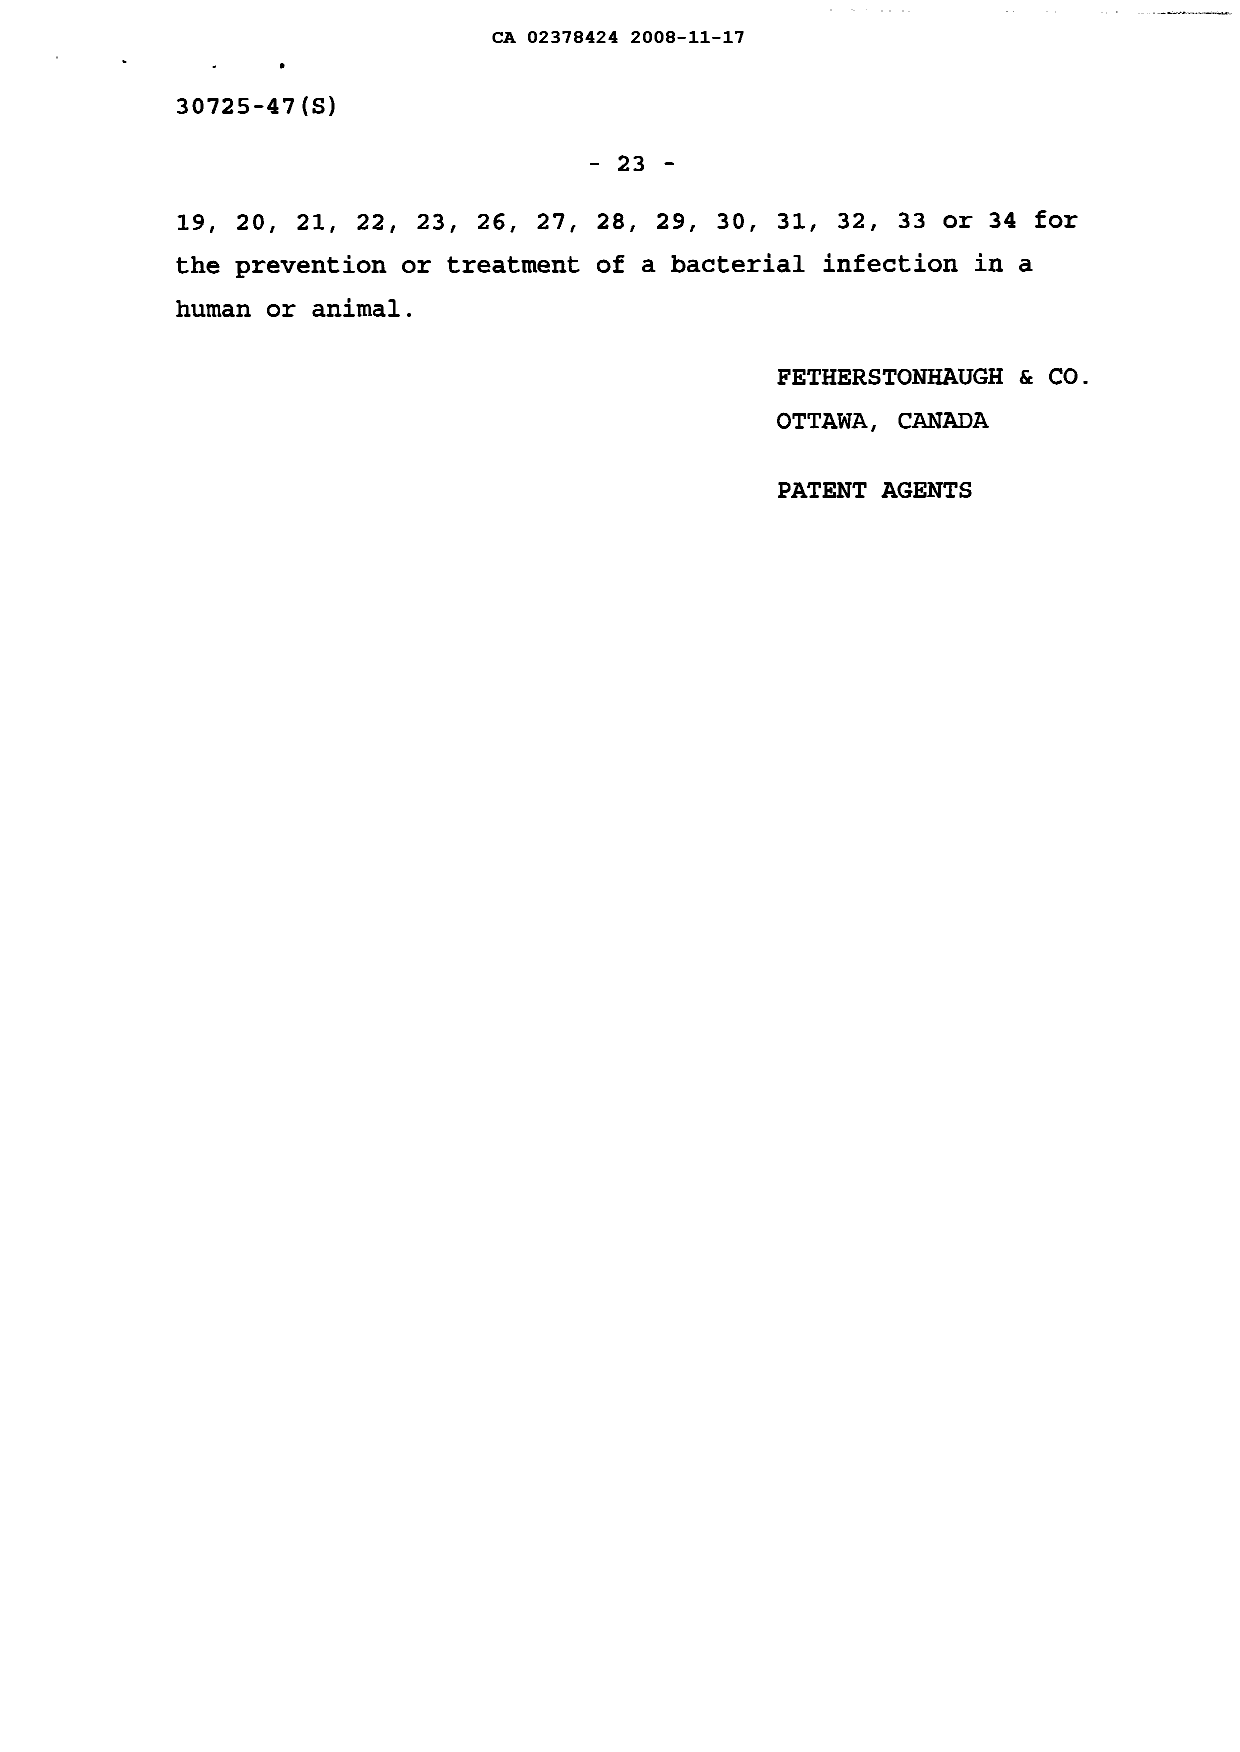 Document de brevet canadien 2378424. Poursuite-Amendment 20071217. Image 10 de 10